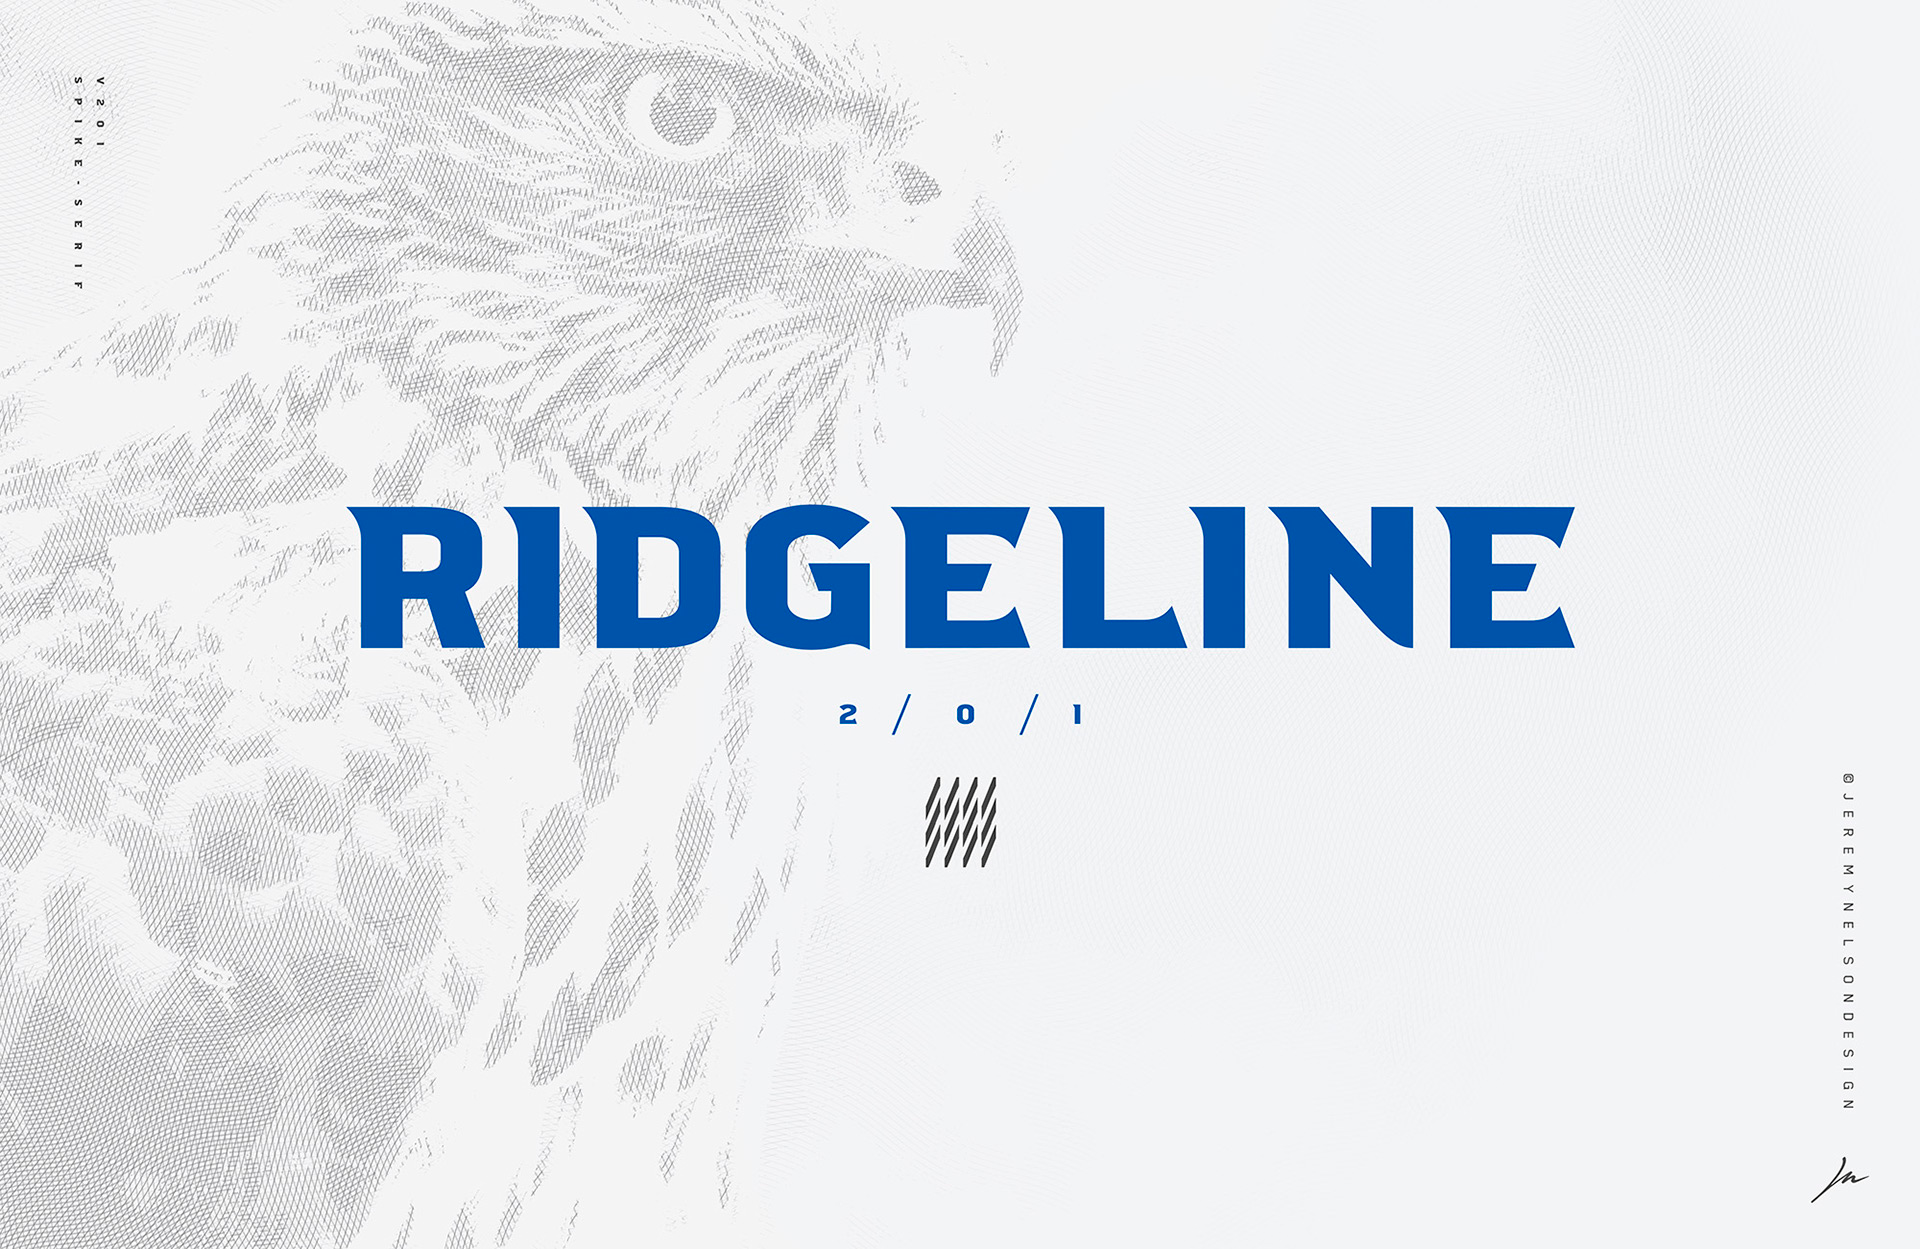 Ridgeline 201